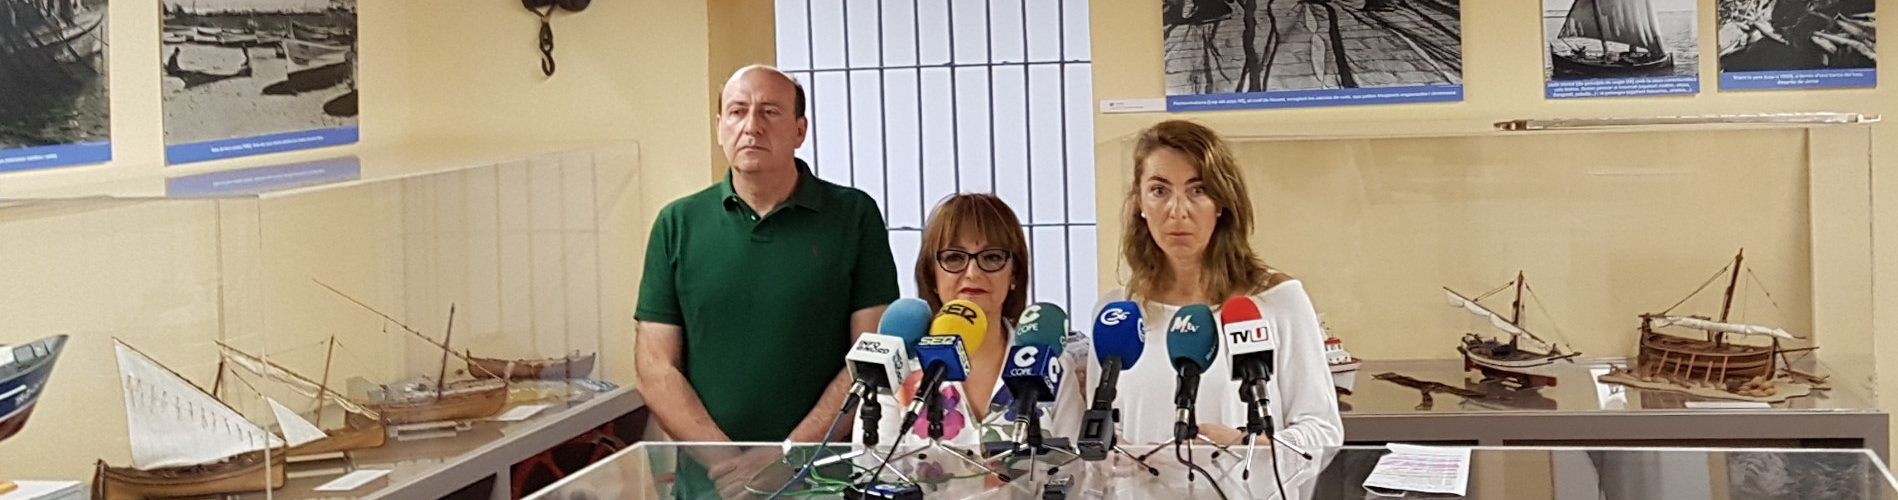 La Unidad de Hospitalización a Domicilio, que atiende 5 municipios, elegida Alè Vinarossenc 2019